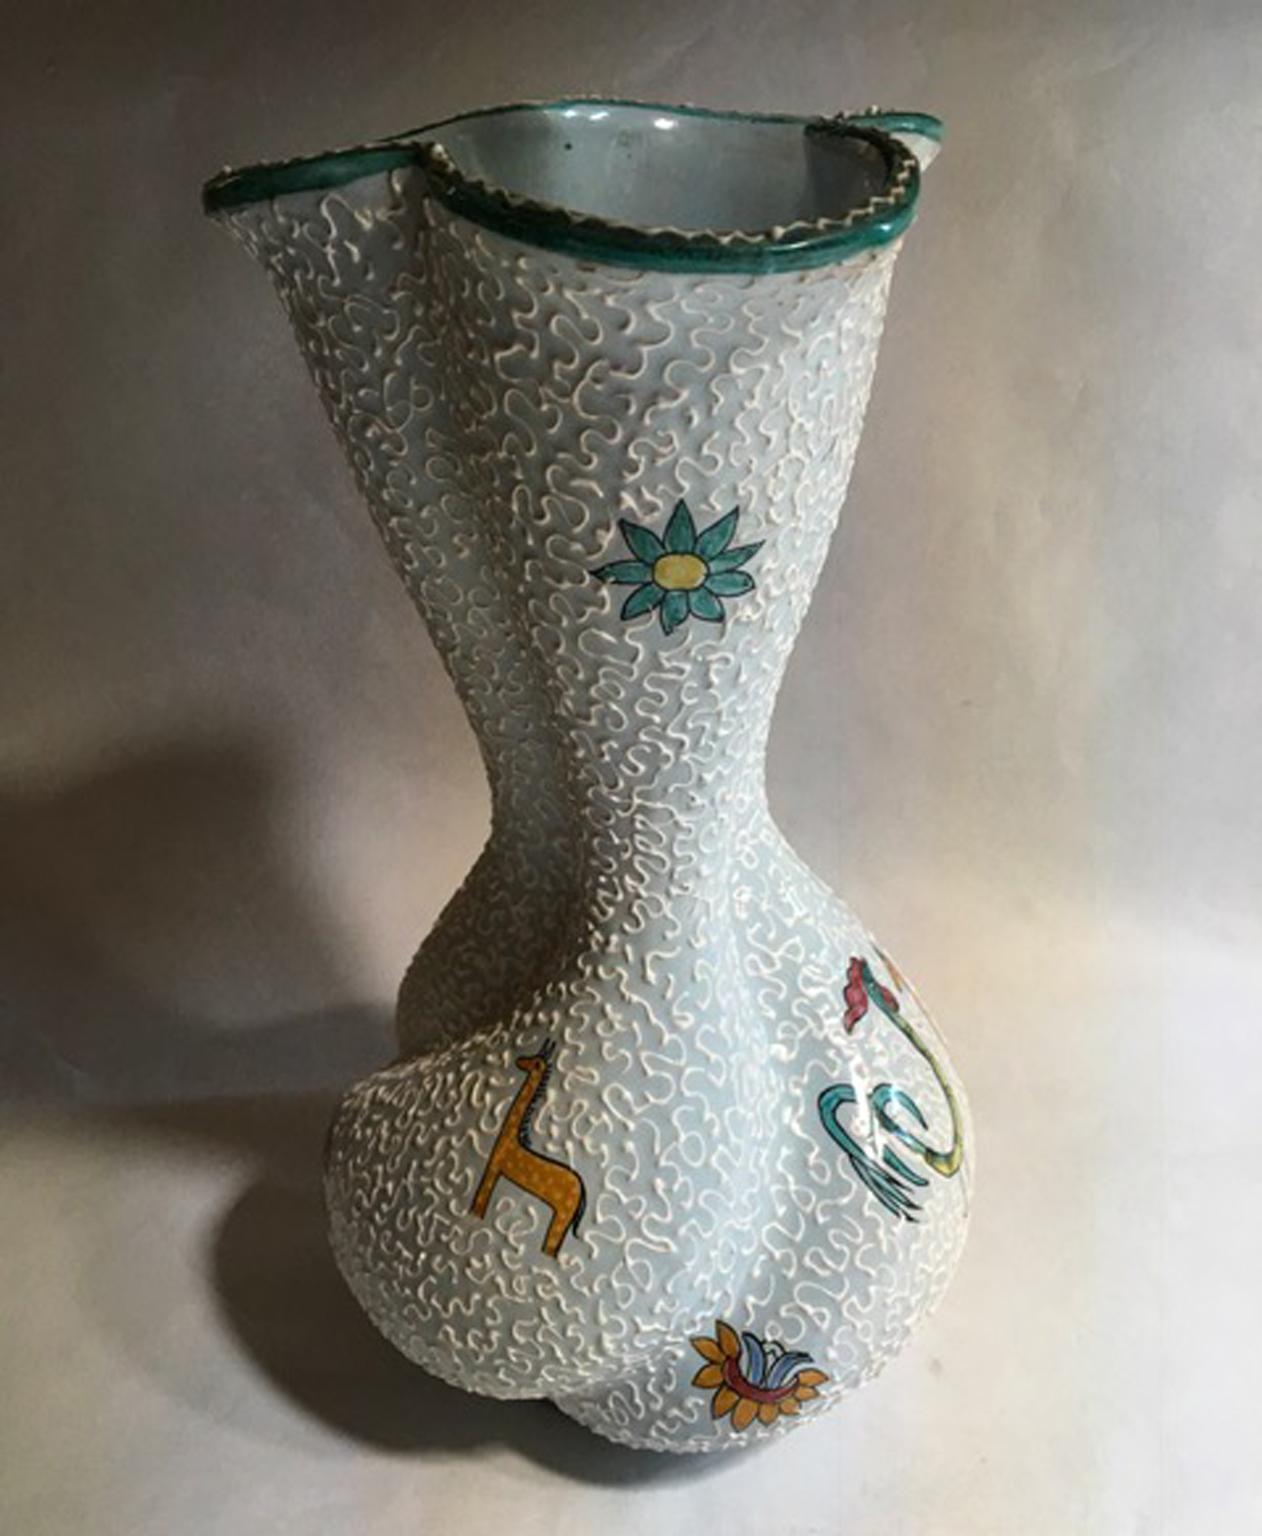 Vase en céramique émaillée blanche de conception italienne de 1960 avec des dessins de fleurs et d'animaux dans un style du milieu du siècle semblable au style de Gio Ponti.

Ce très beau vase est fabriqué par Deruta, une usine italienne, dans une